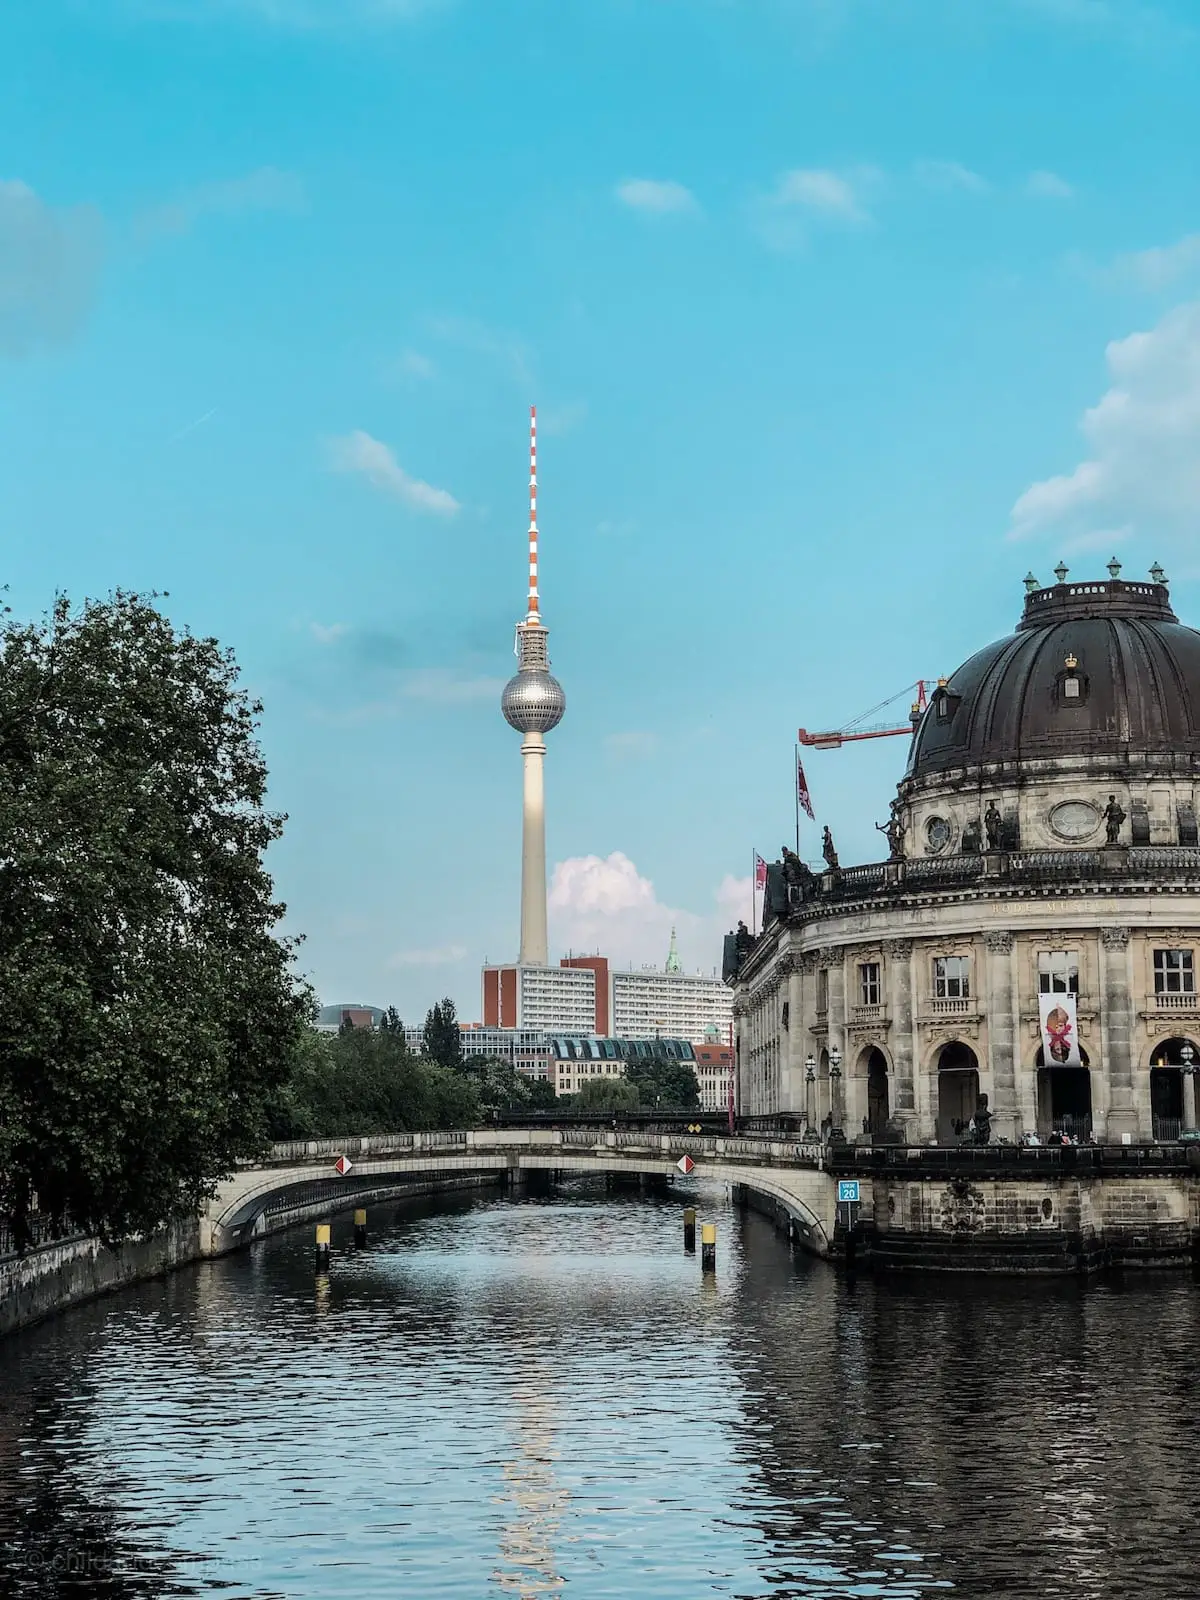 Städtereise Berlin, Reisetipps und Sehenswürdigkeiten in Berlin, Fernsehturm Berlin